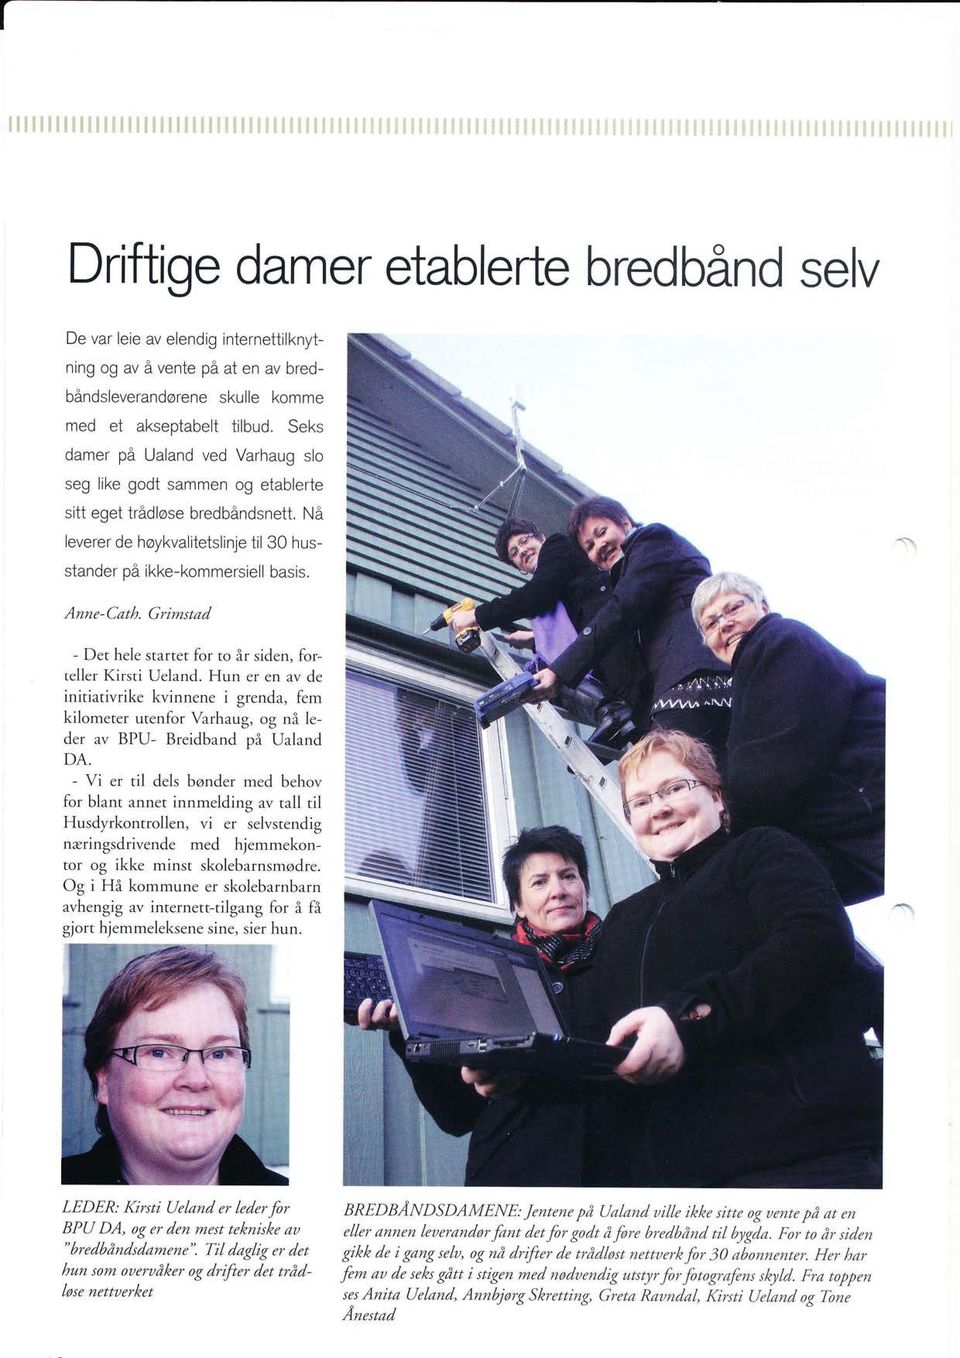 Grimstød - Det hele startet for to år siden, forteller Kirsti Ueland. Hun er en av de initiativrike kvinnene i grenda, fem kilometer utenfor Varhaug, og nå leder av BPU- Breidband på Ualand DA.